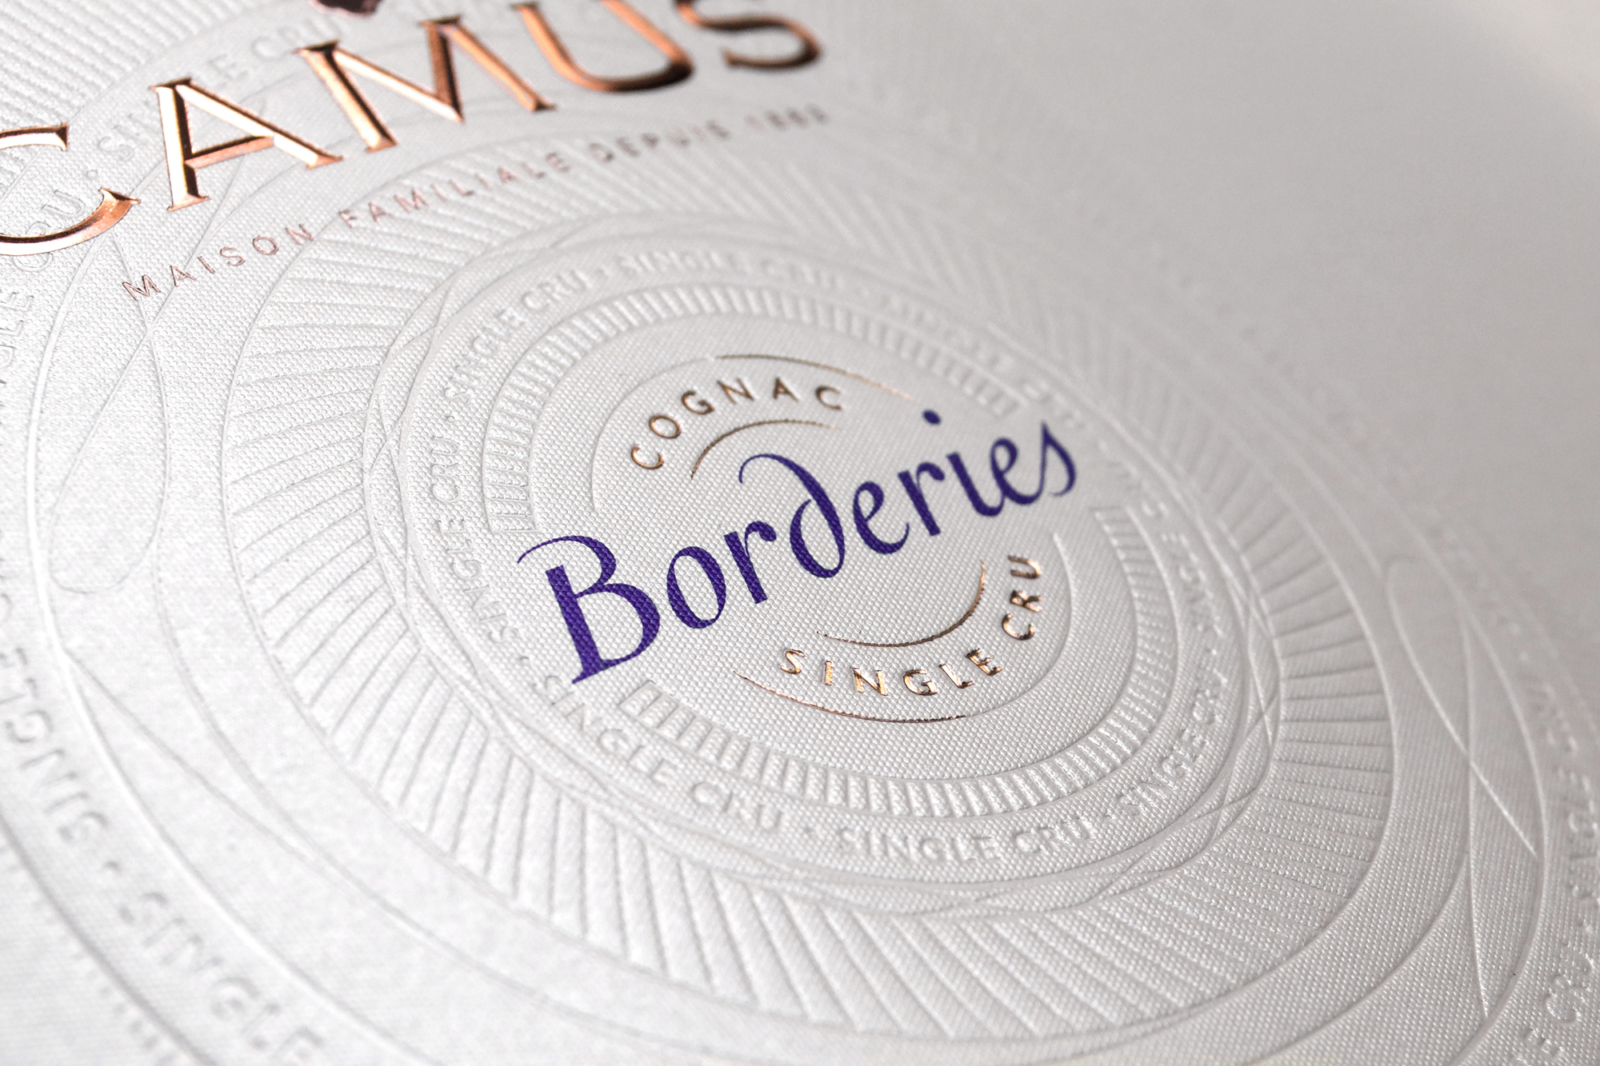 Camus Borderies - Un design pensé par l’agence de design de Paris Partisan du Sens.